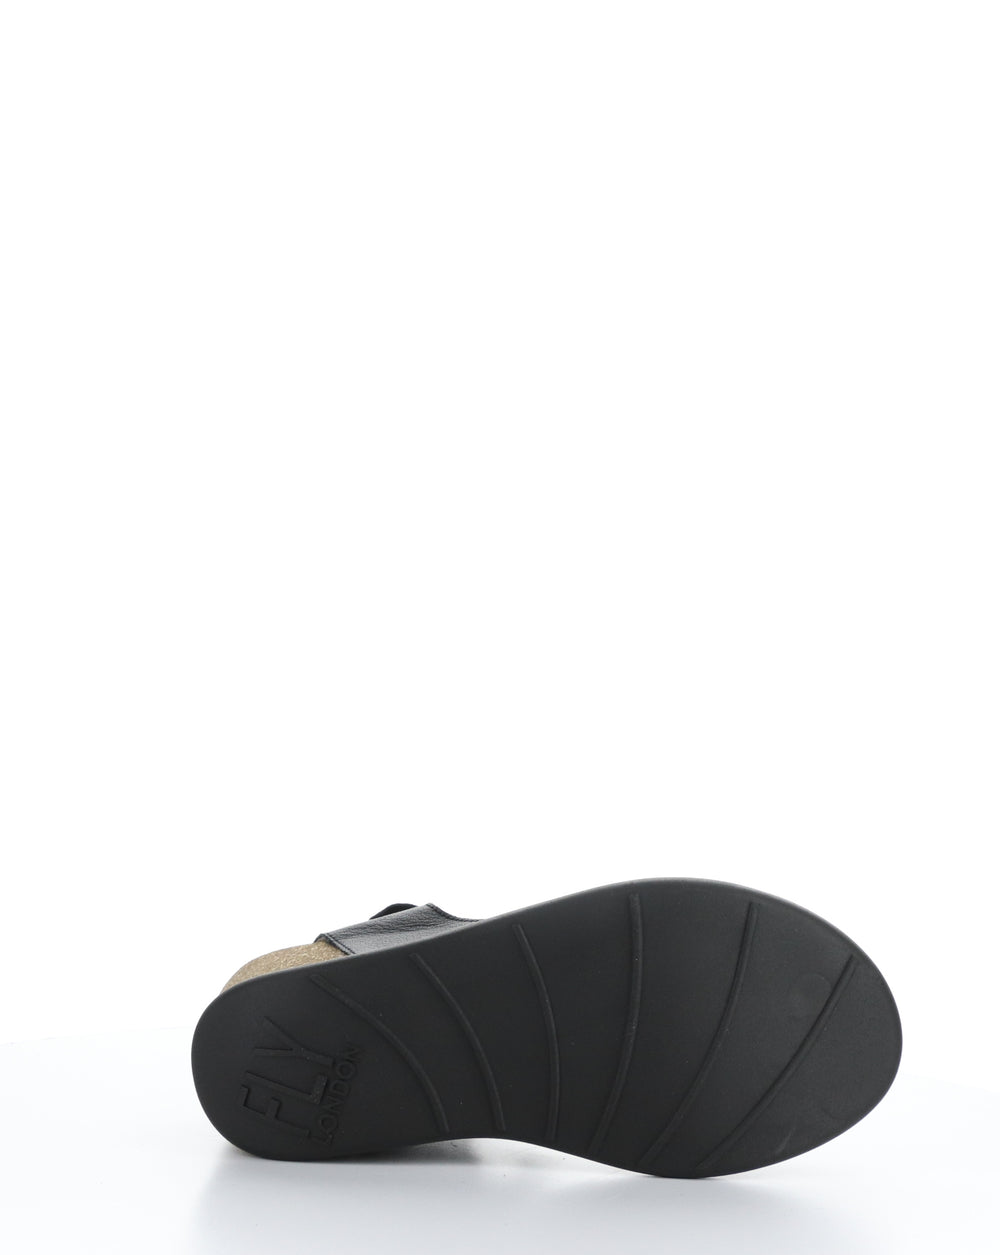 GOGO967FLY 000 BLACK Velcro Sandals